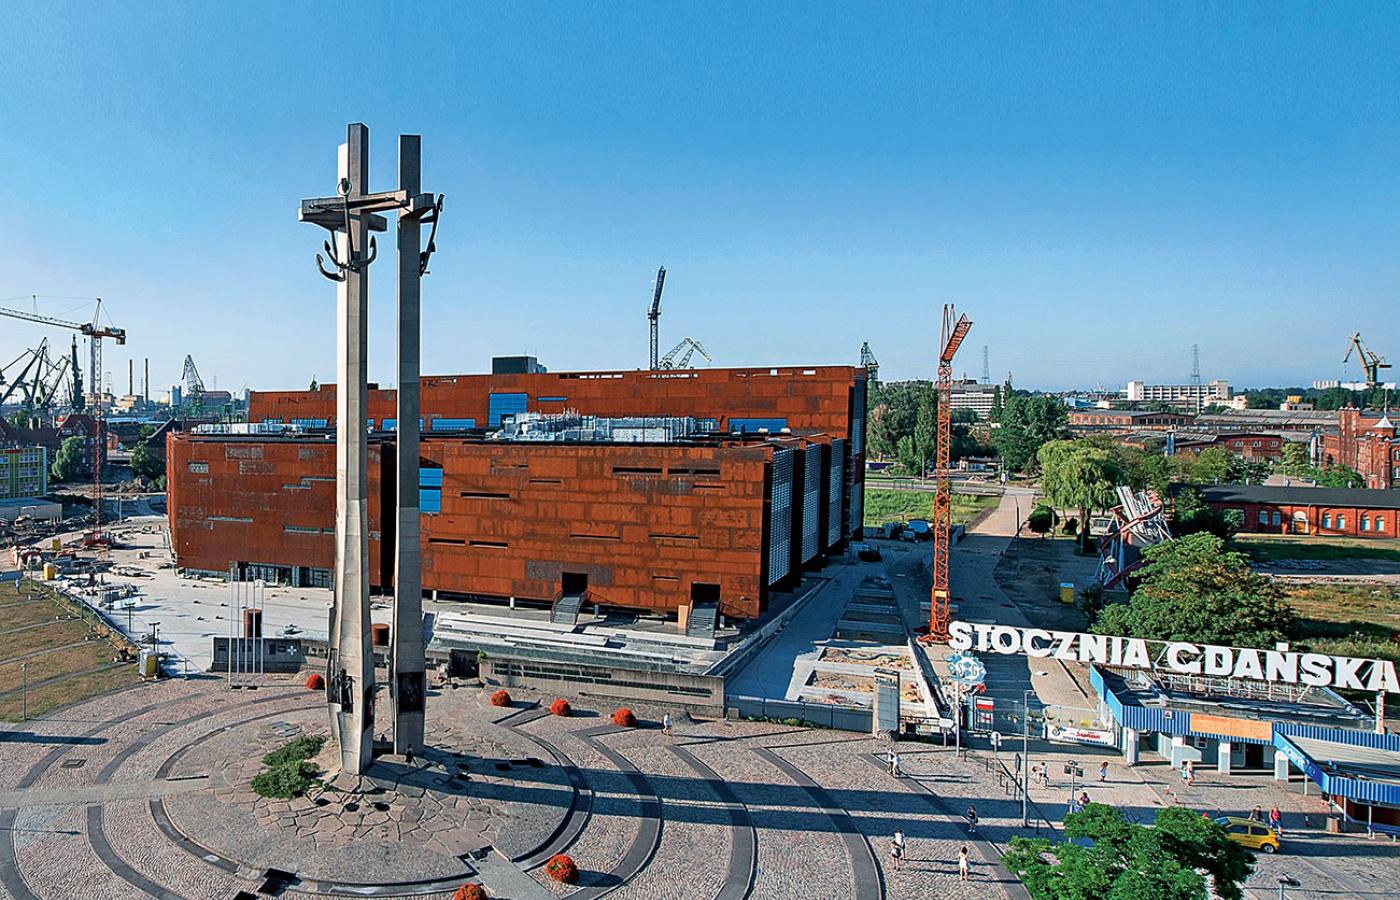 Nowa siedziba ECS będzie jednym z największych centrów kultury w Polsce powstałych po 1989 r. – całkowita powierzchnia zabudowy budynku to 25 tys. m kw.